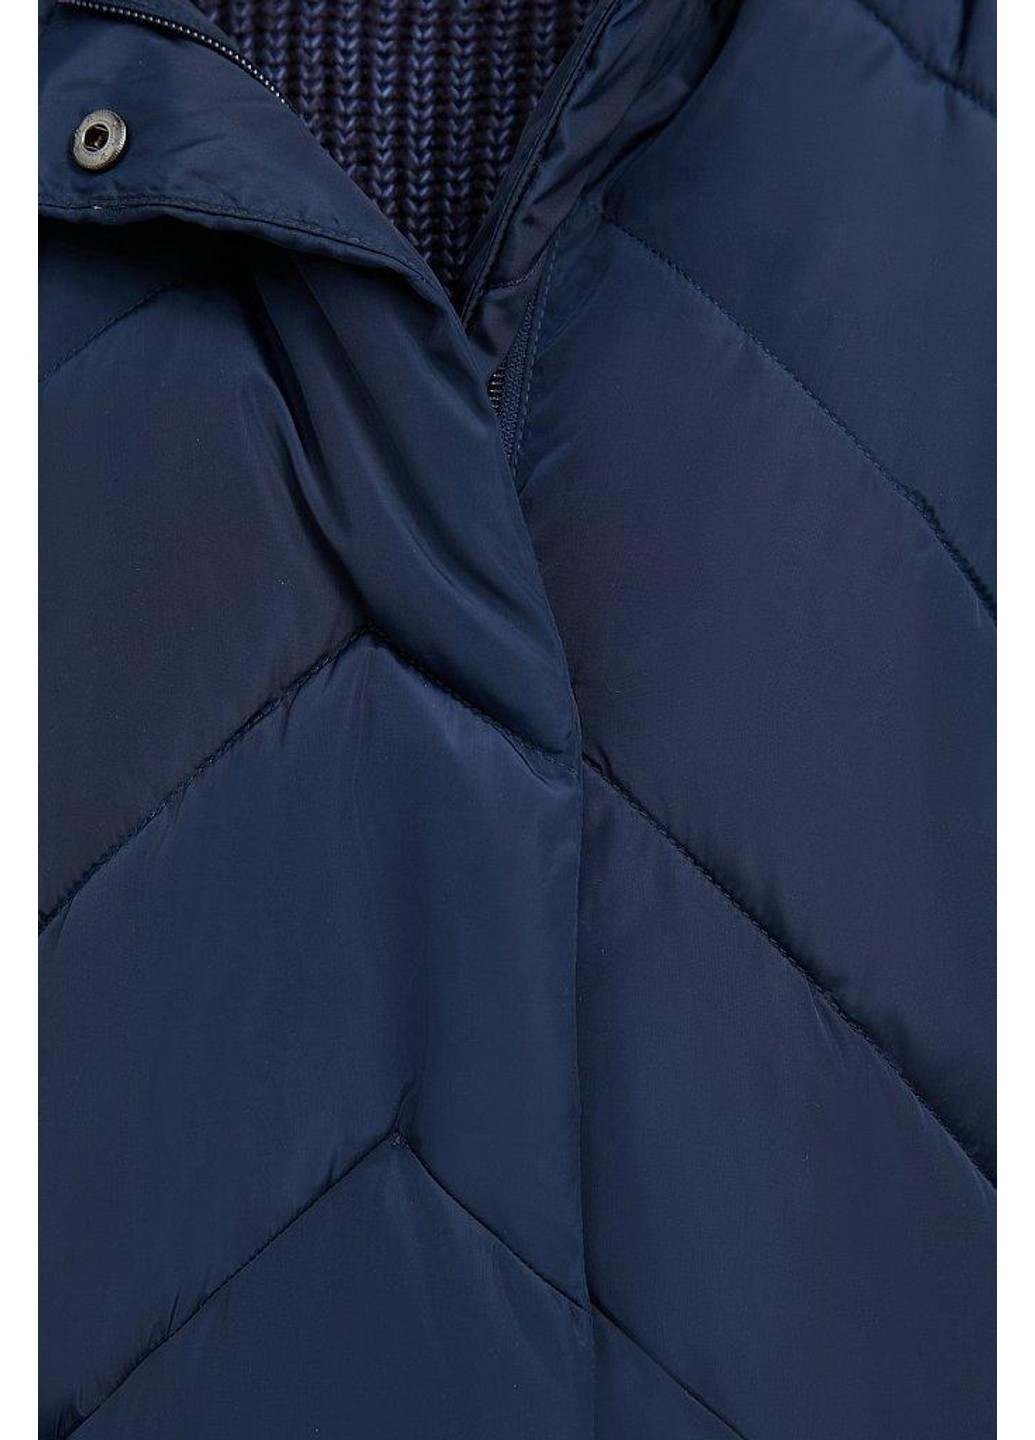 Темно-синяя зимняя зимняя куртка a20-11006-101 Finn Flare